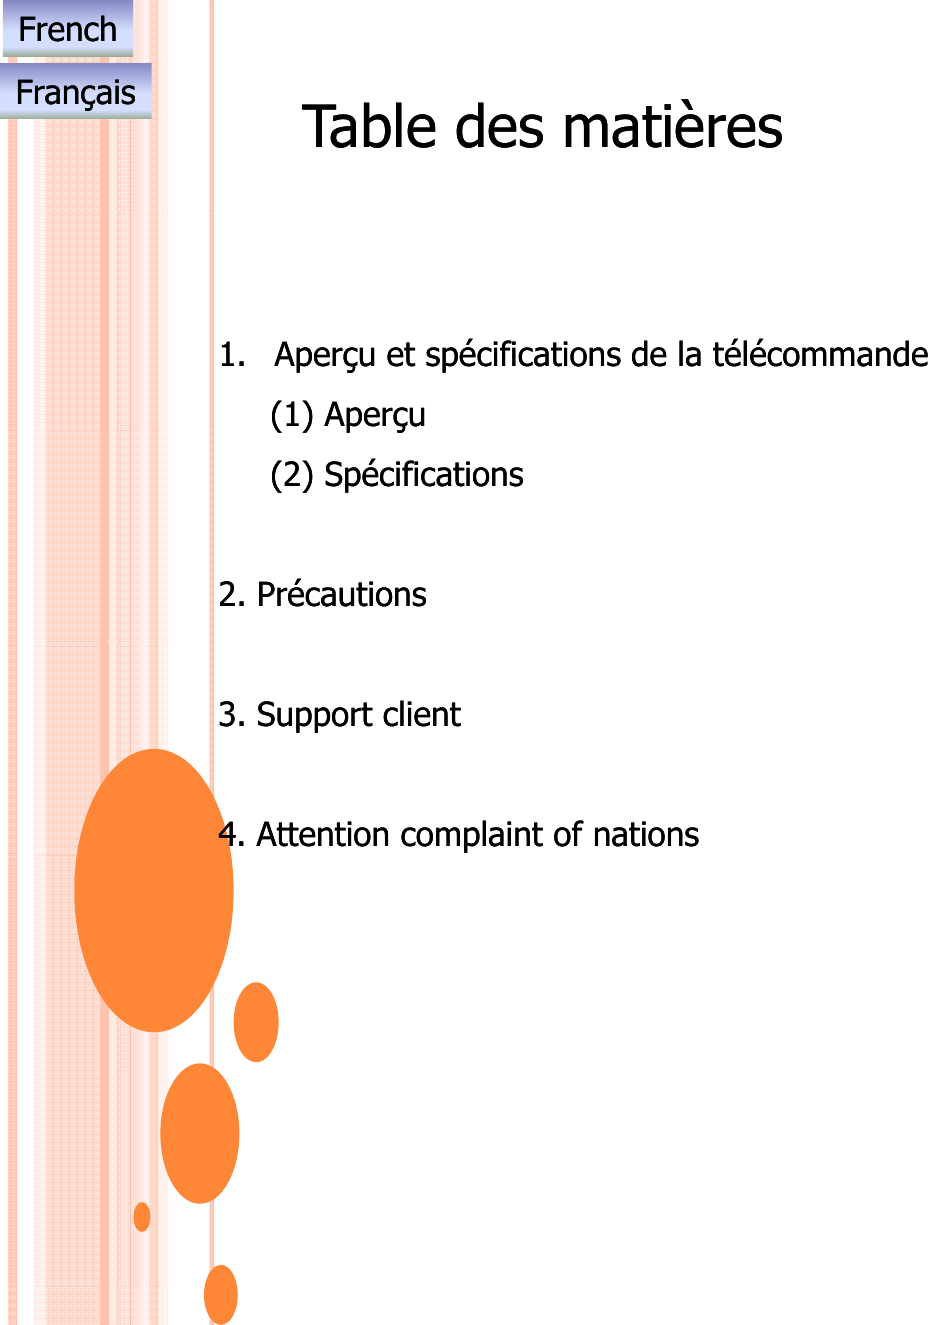 Table des matièresTable des matièresFrenchFrenchFrançaisFrançais1.1. Aperçu et spécifications de la télécommandeAperçu et spécifications de la télécommande(1) (1) AperçuAperçu()()pçpç(2) (2) SpécificationsSpécifications2. 2. PrécautionsPrécautions3. 3. Support clientSupport client4. Attention complaint of nations4. Attention complaint of nations